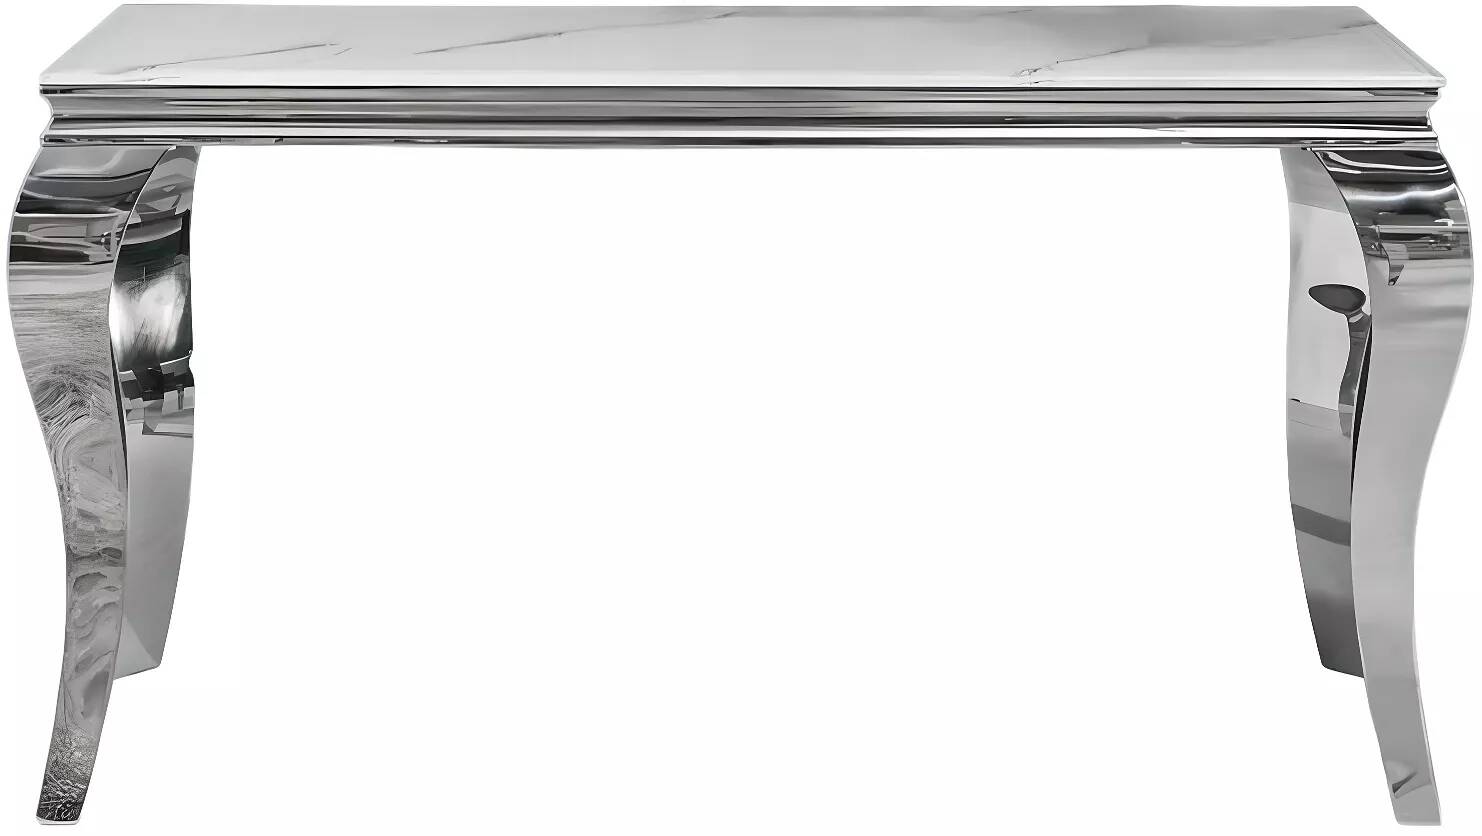 Console en verre blanc aspect marbre et acier inoxydable L145